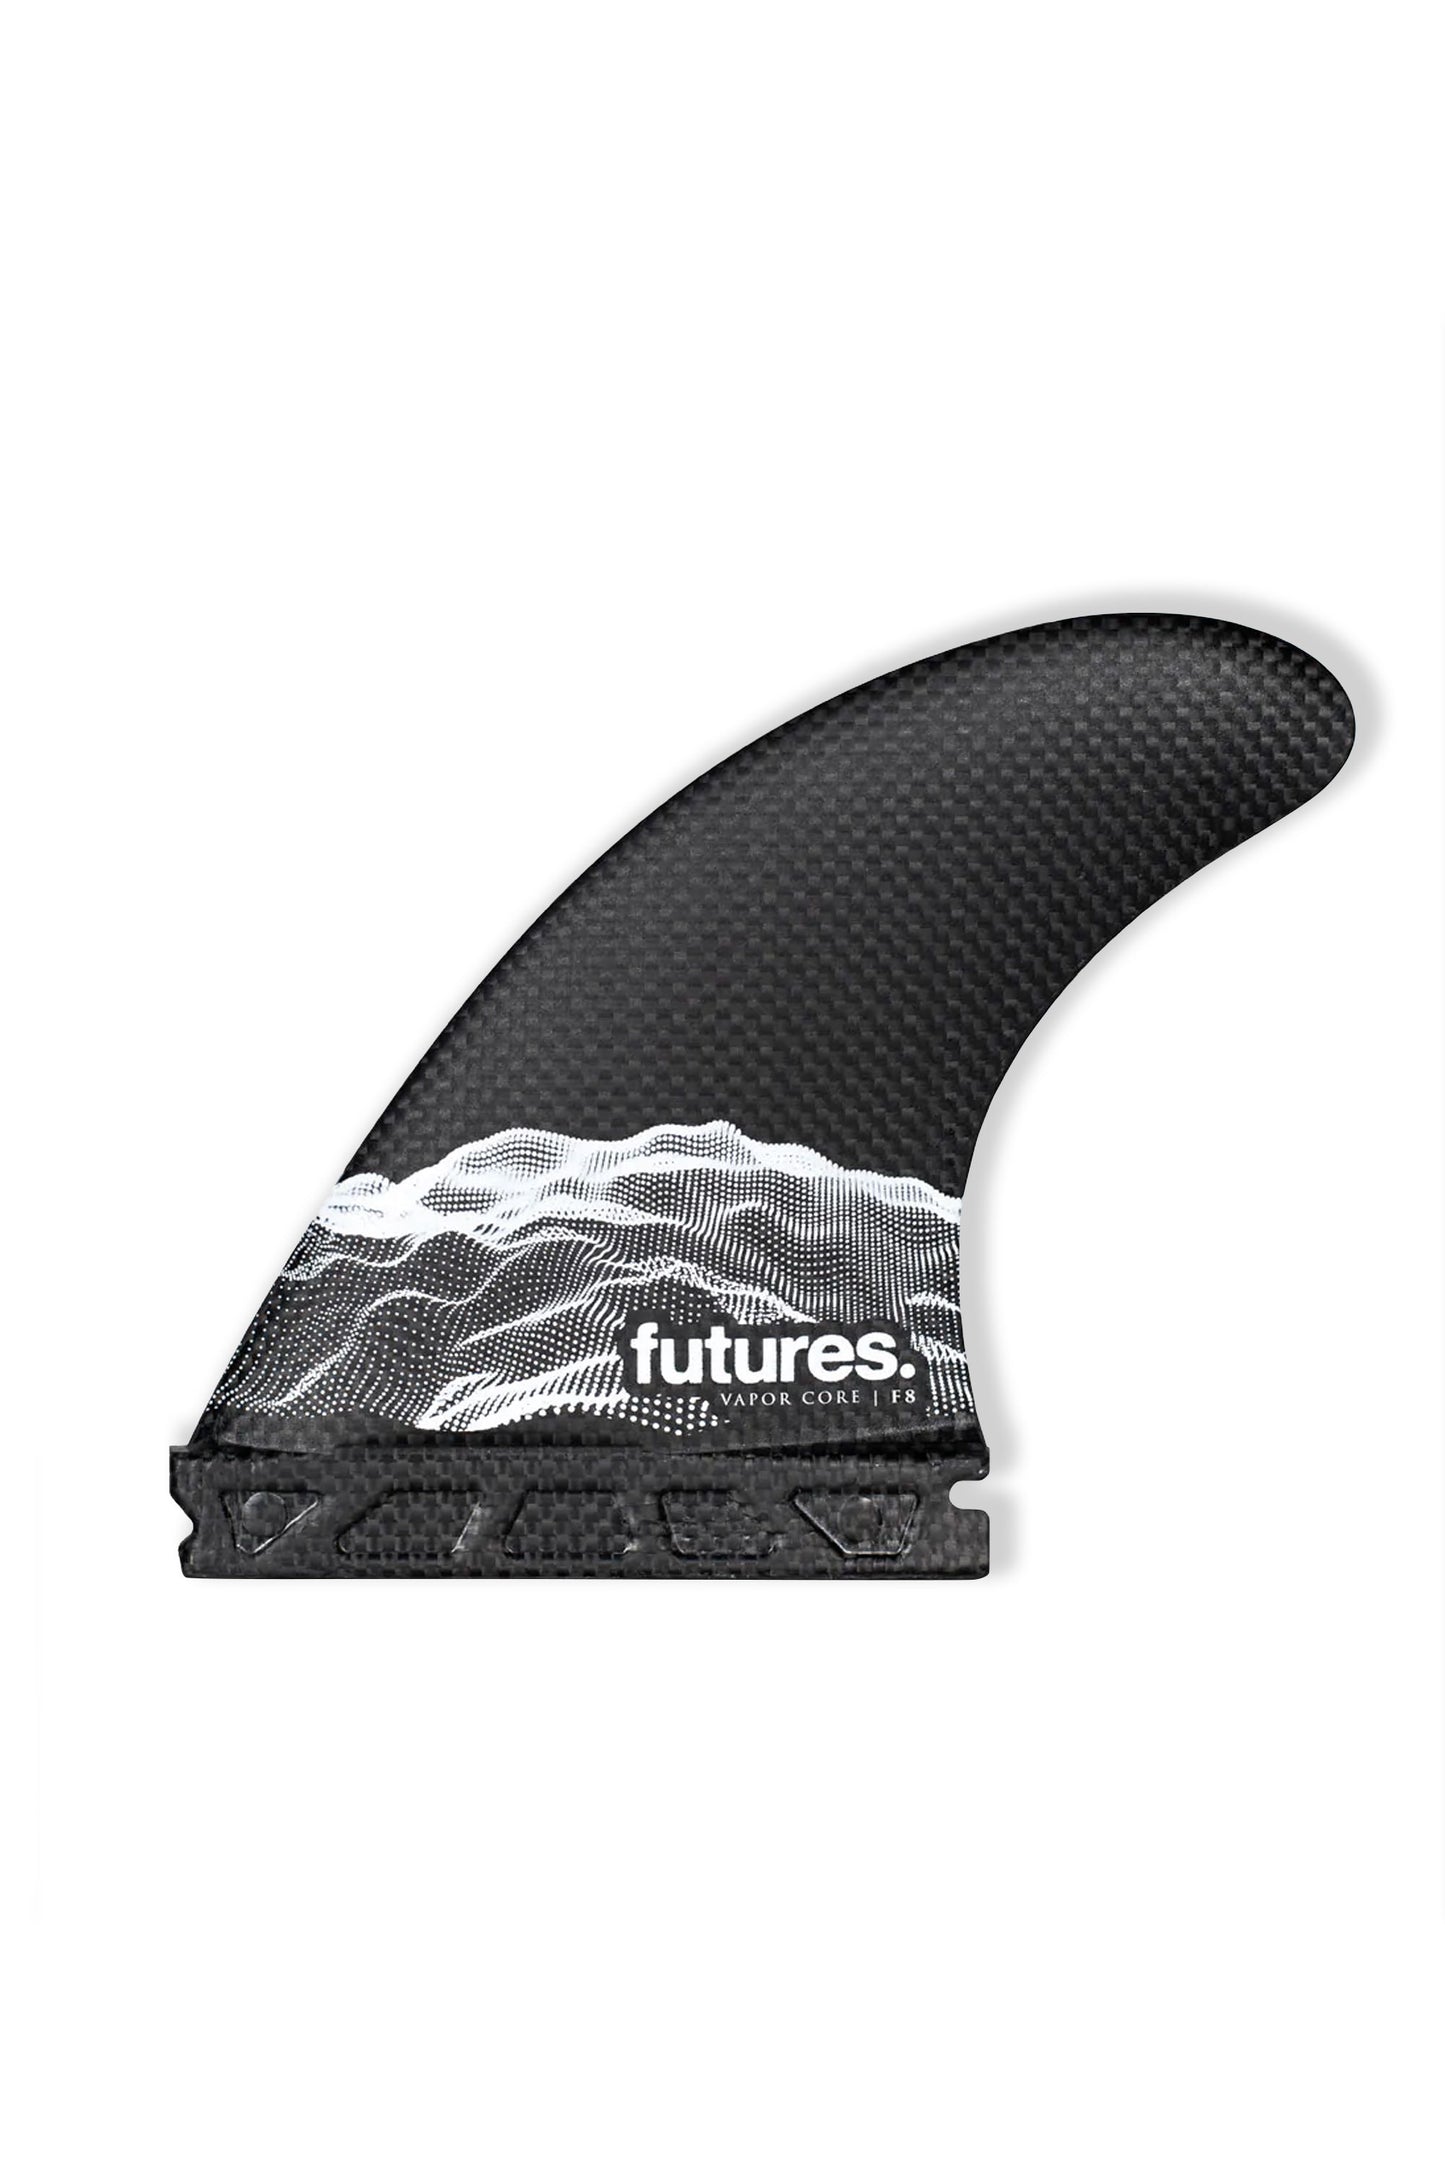 Pukas-Surf-Shop-Fins-Futures-Vapor-Core-F8-black